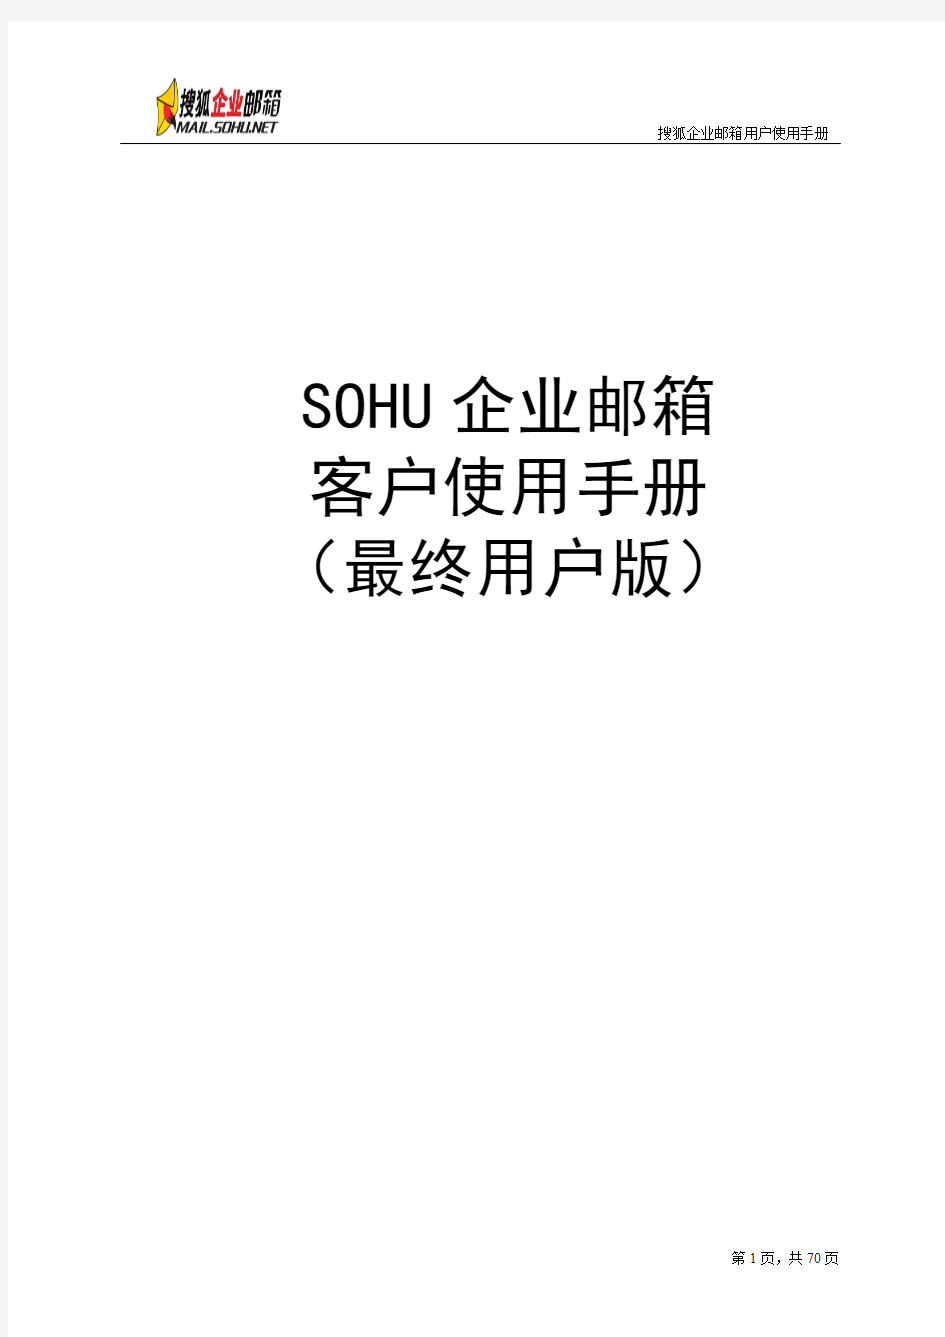 sohu邮箱客户使用手册